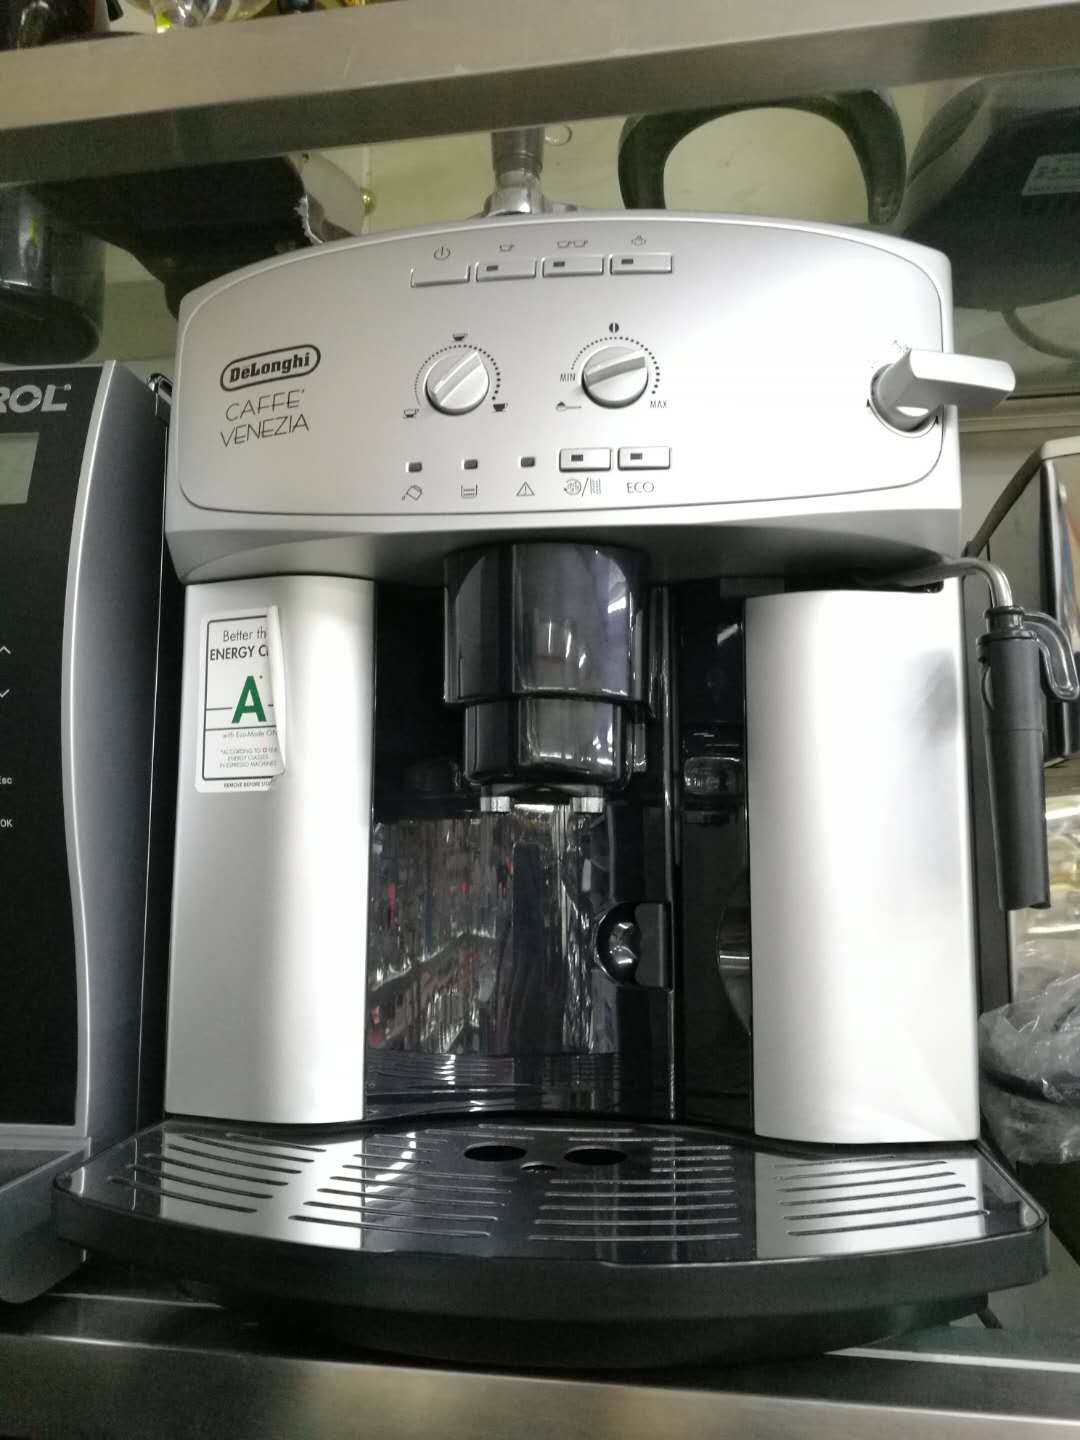 DeLonghi Commercial Coffee Machine Automatic Espresso